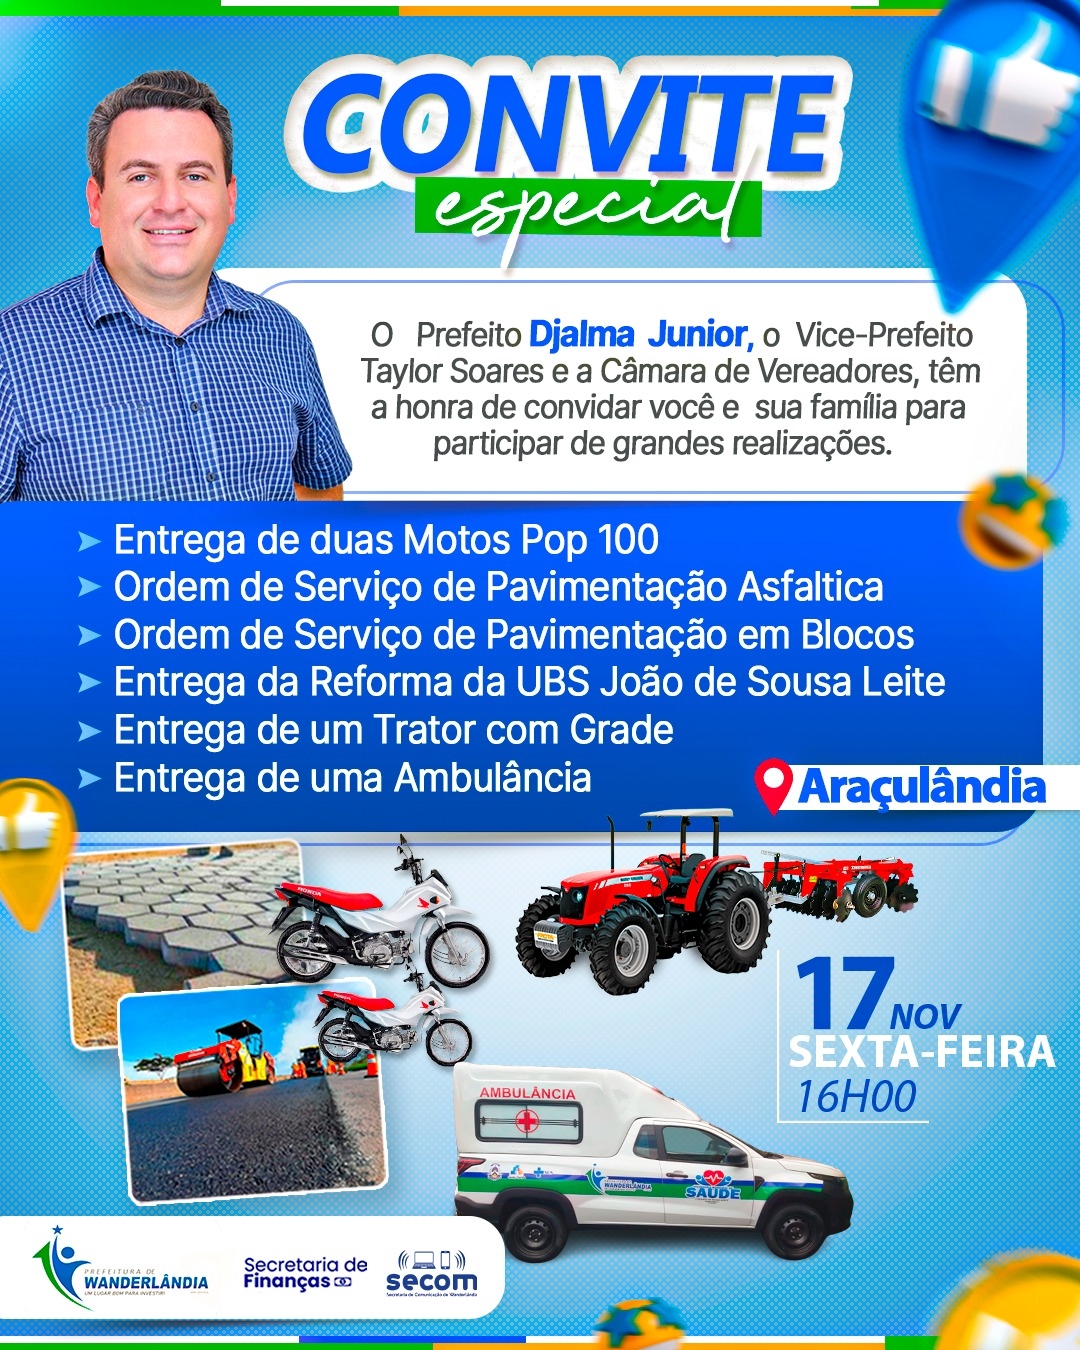 Convite Especial o Prefeito Djalma Jr convida todos nesta sexta feira 17 de Novembro no Pov Araçulândia  grandes inaugurações  e entrega  de Maquinas  e veículos 